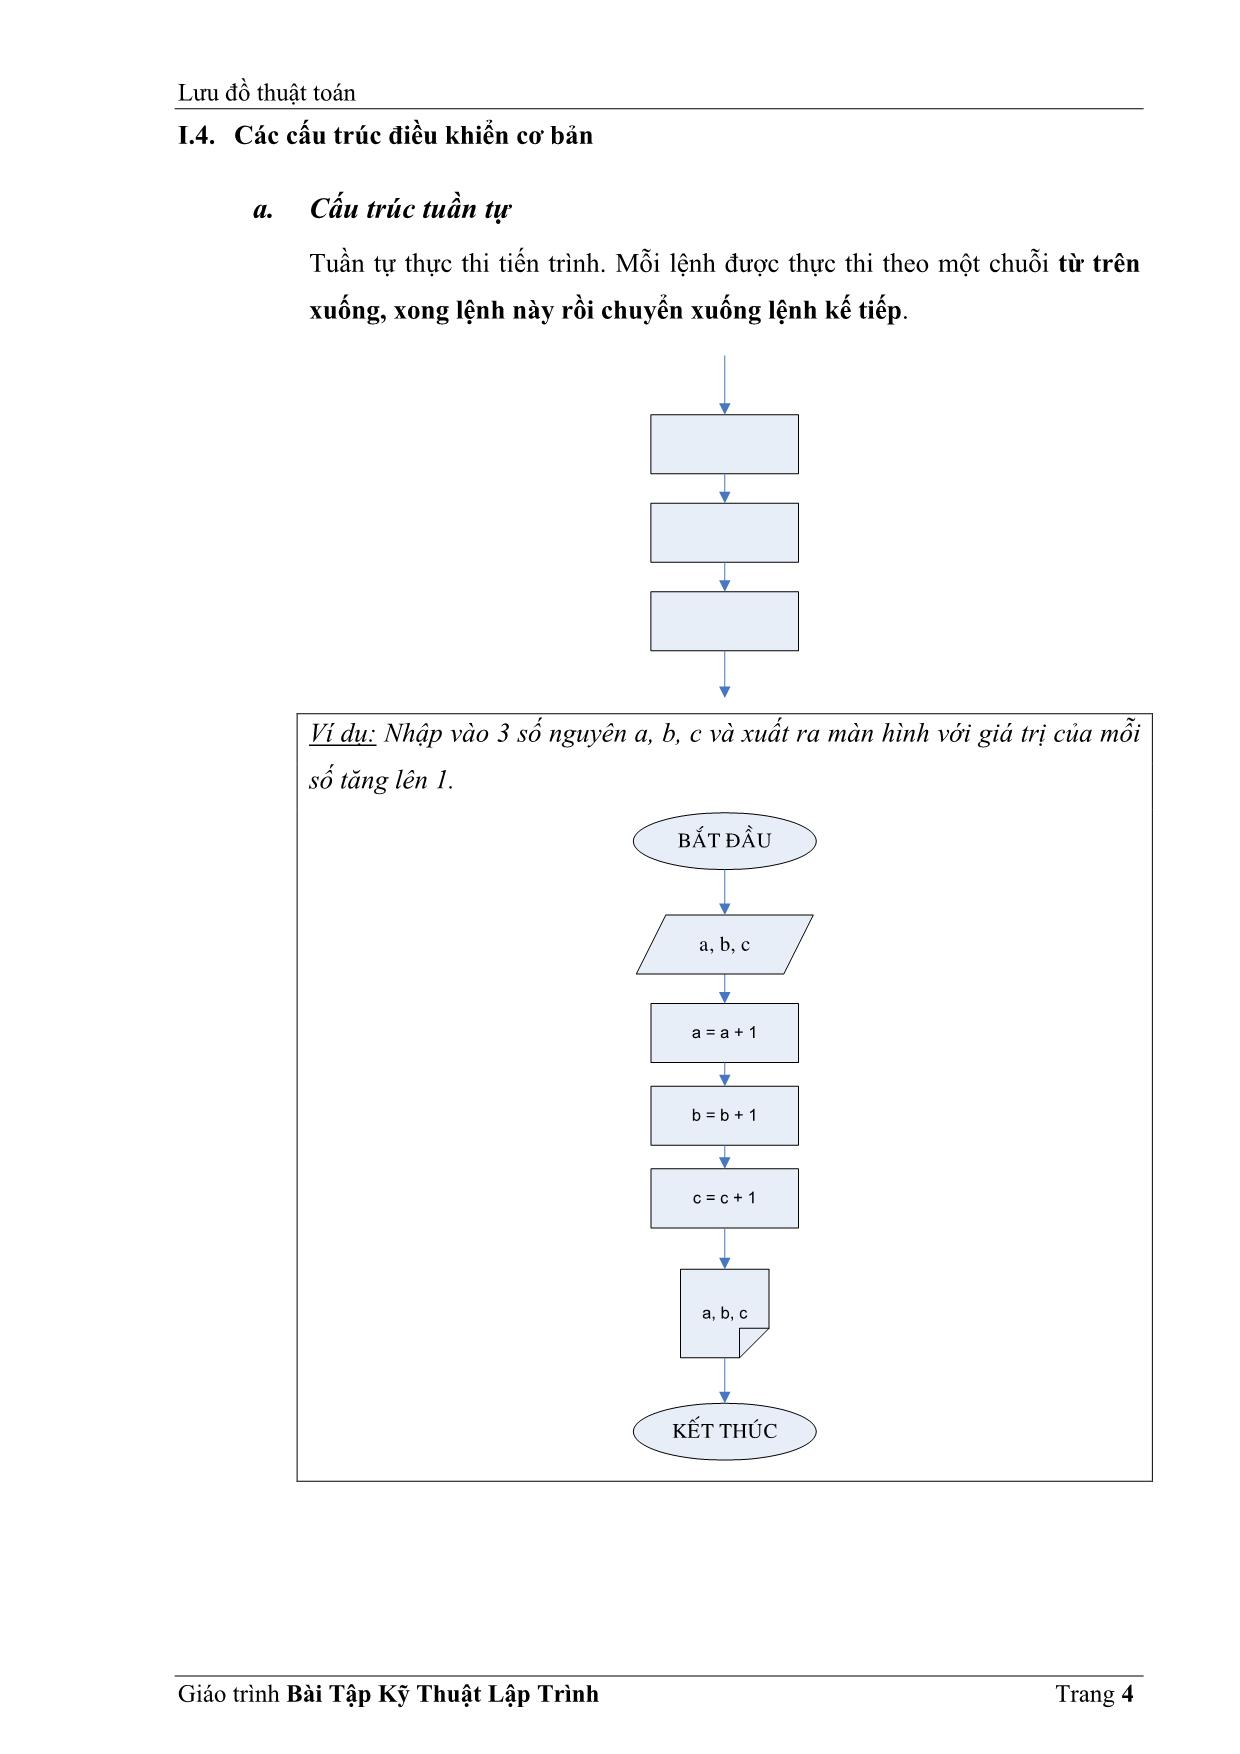 Giáo trình về bài tập kỹ thuật lập trình trang 4